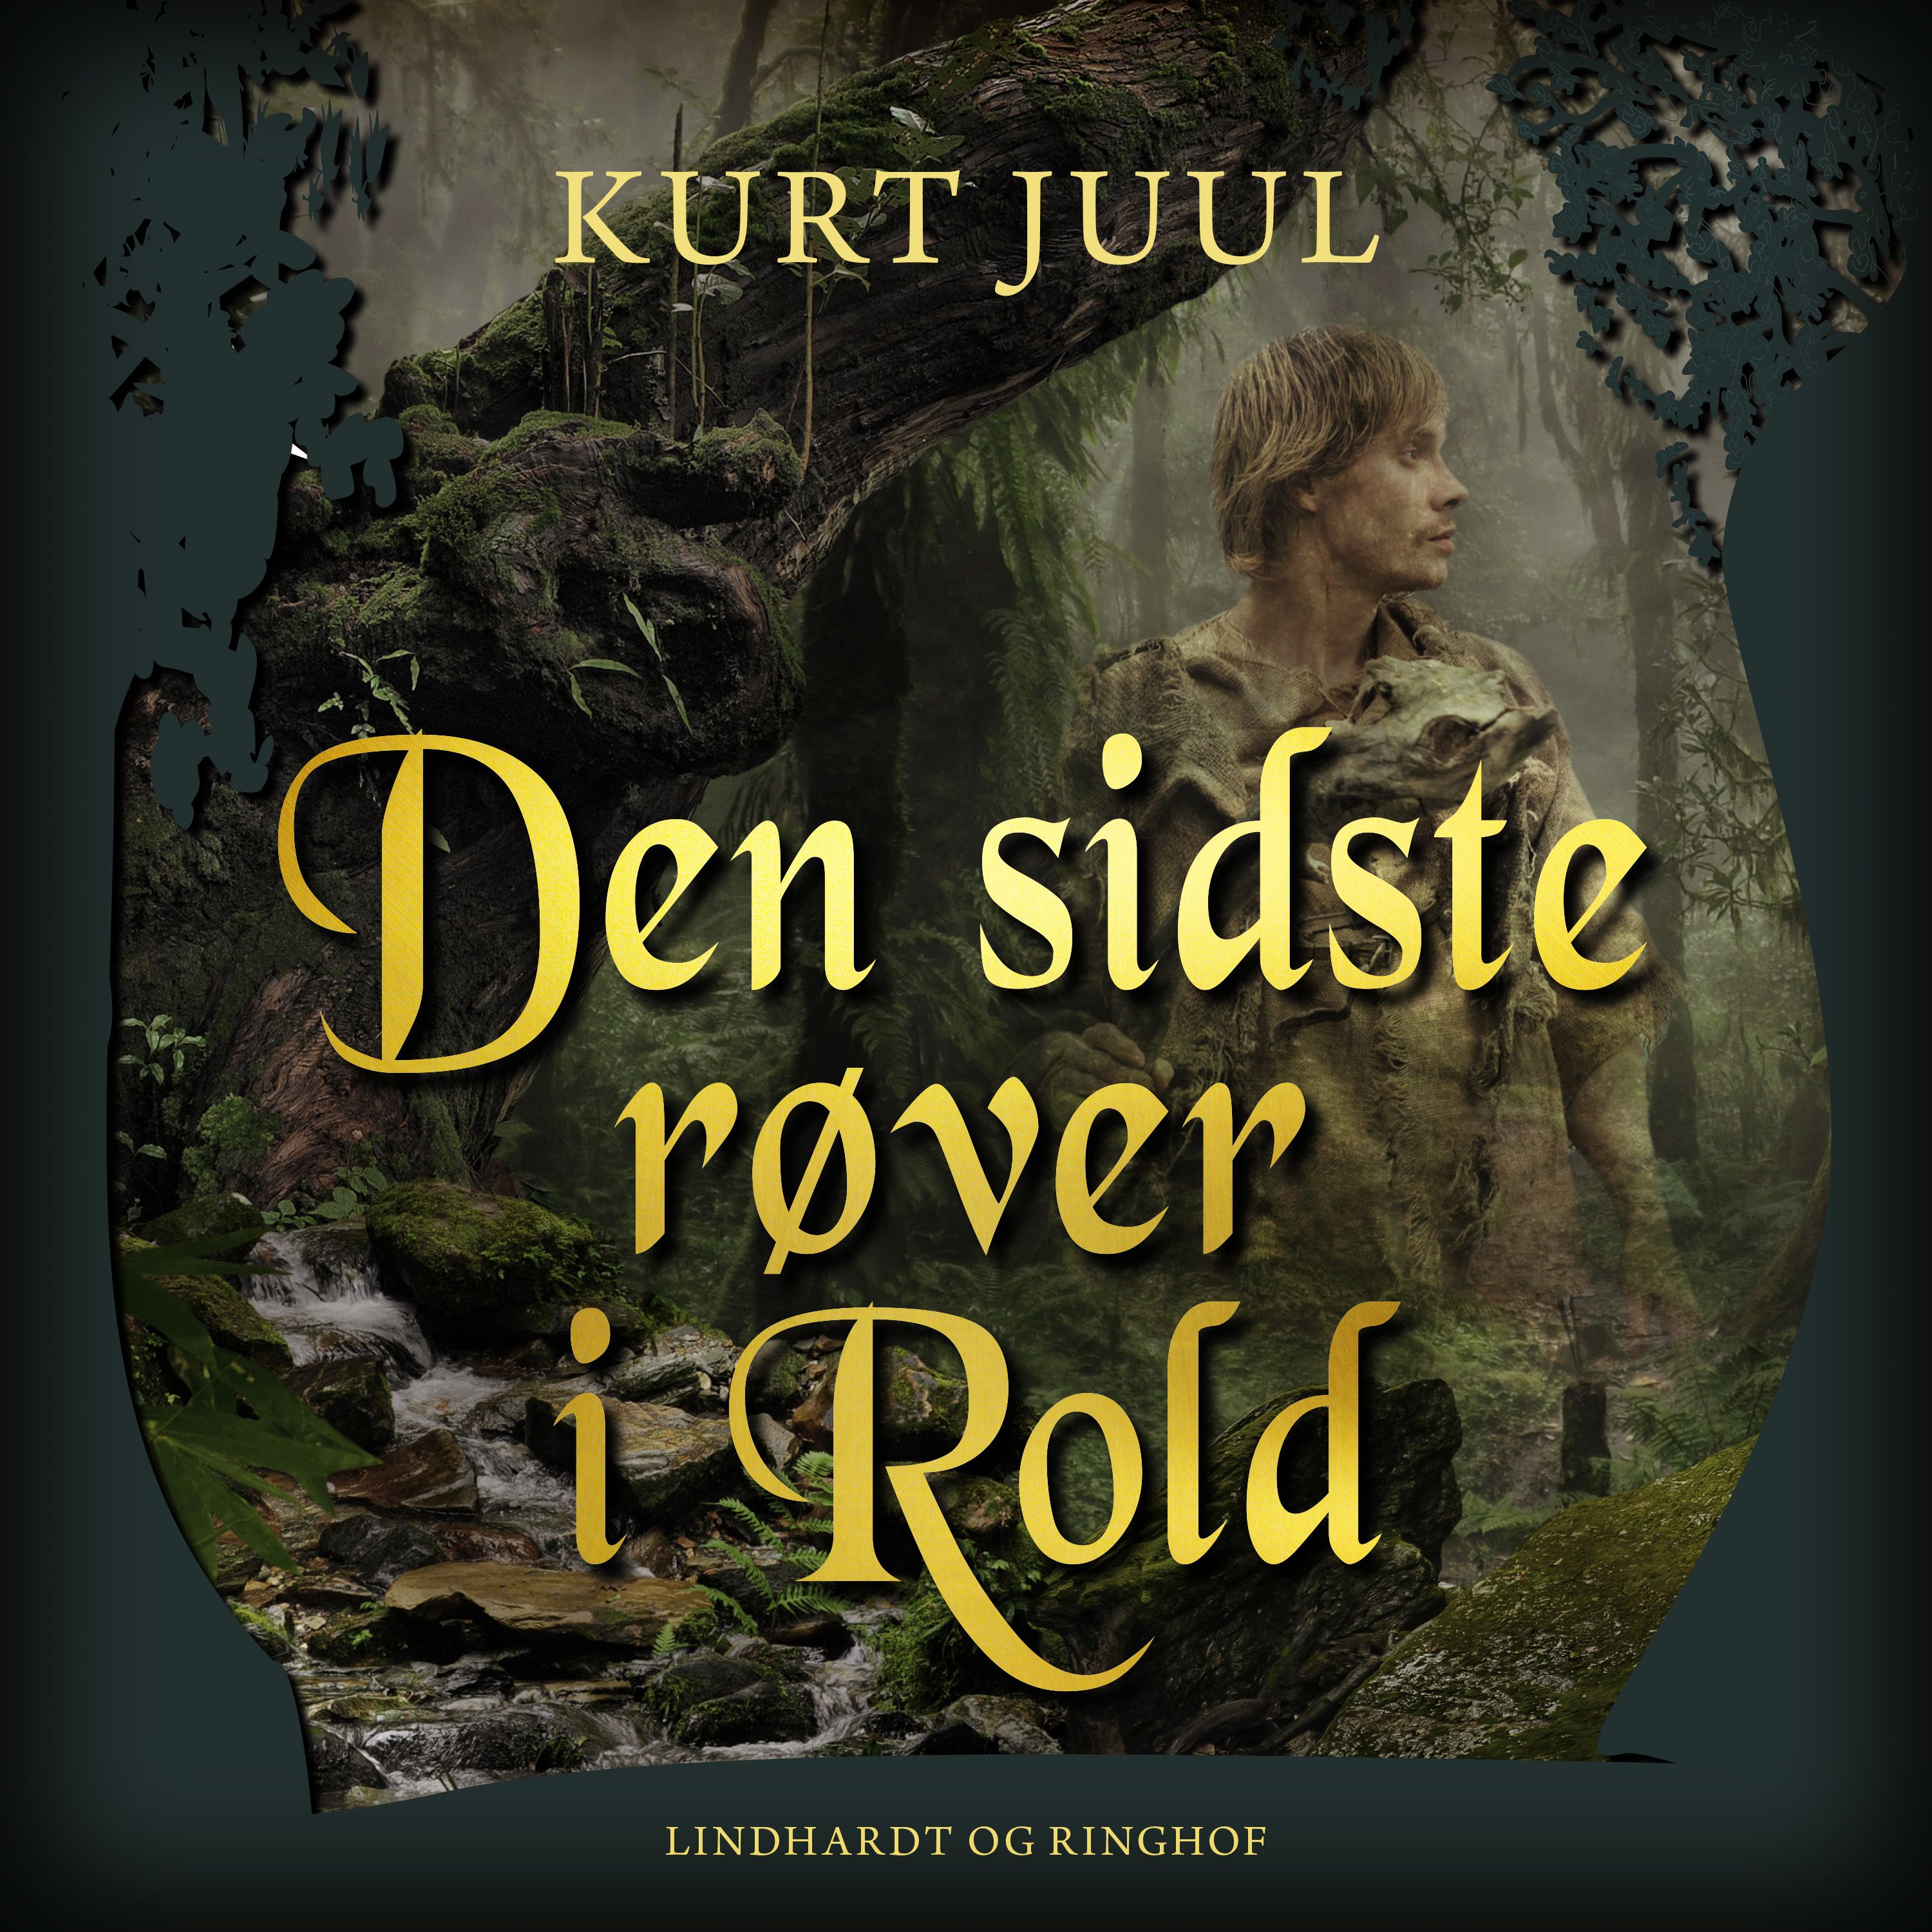 Den sidste røver i Rold, ljudbok av Kurt Juul